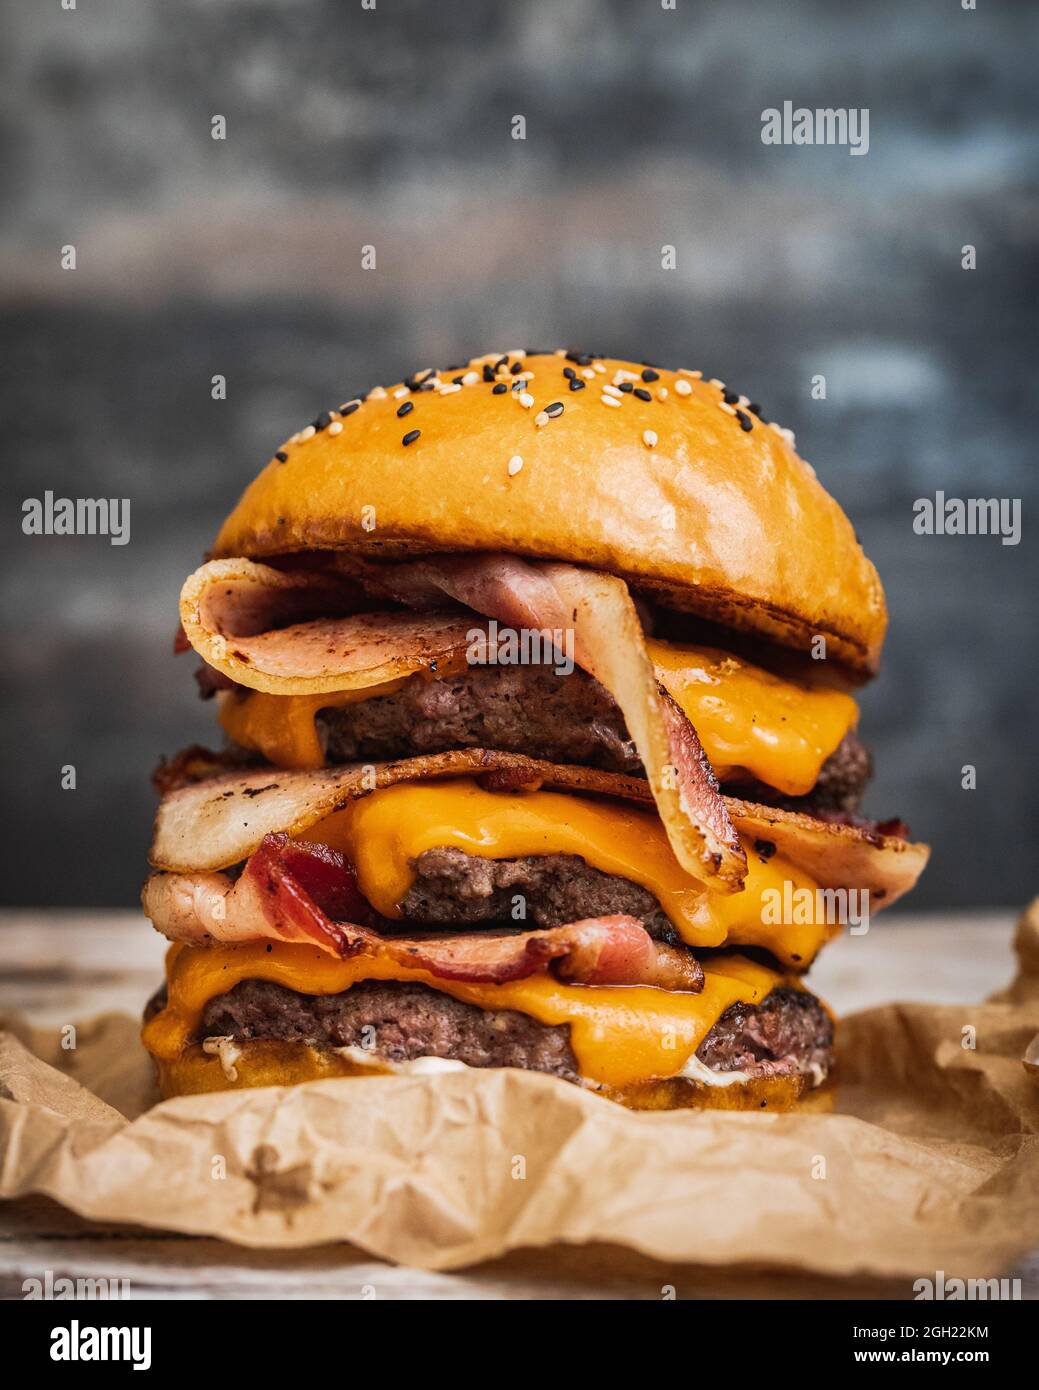 Gros plan d'un délicieux hamburger géant au bacon frit, au fromage fondu et au bœuf Banque D'Images